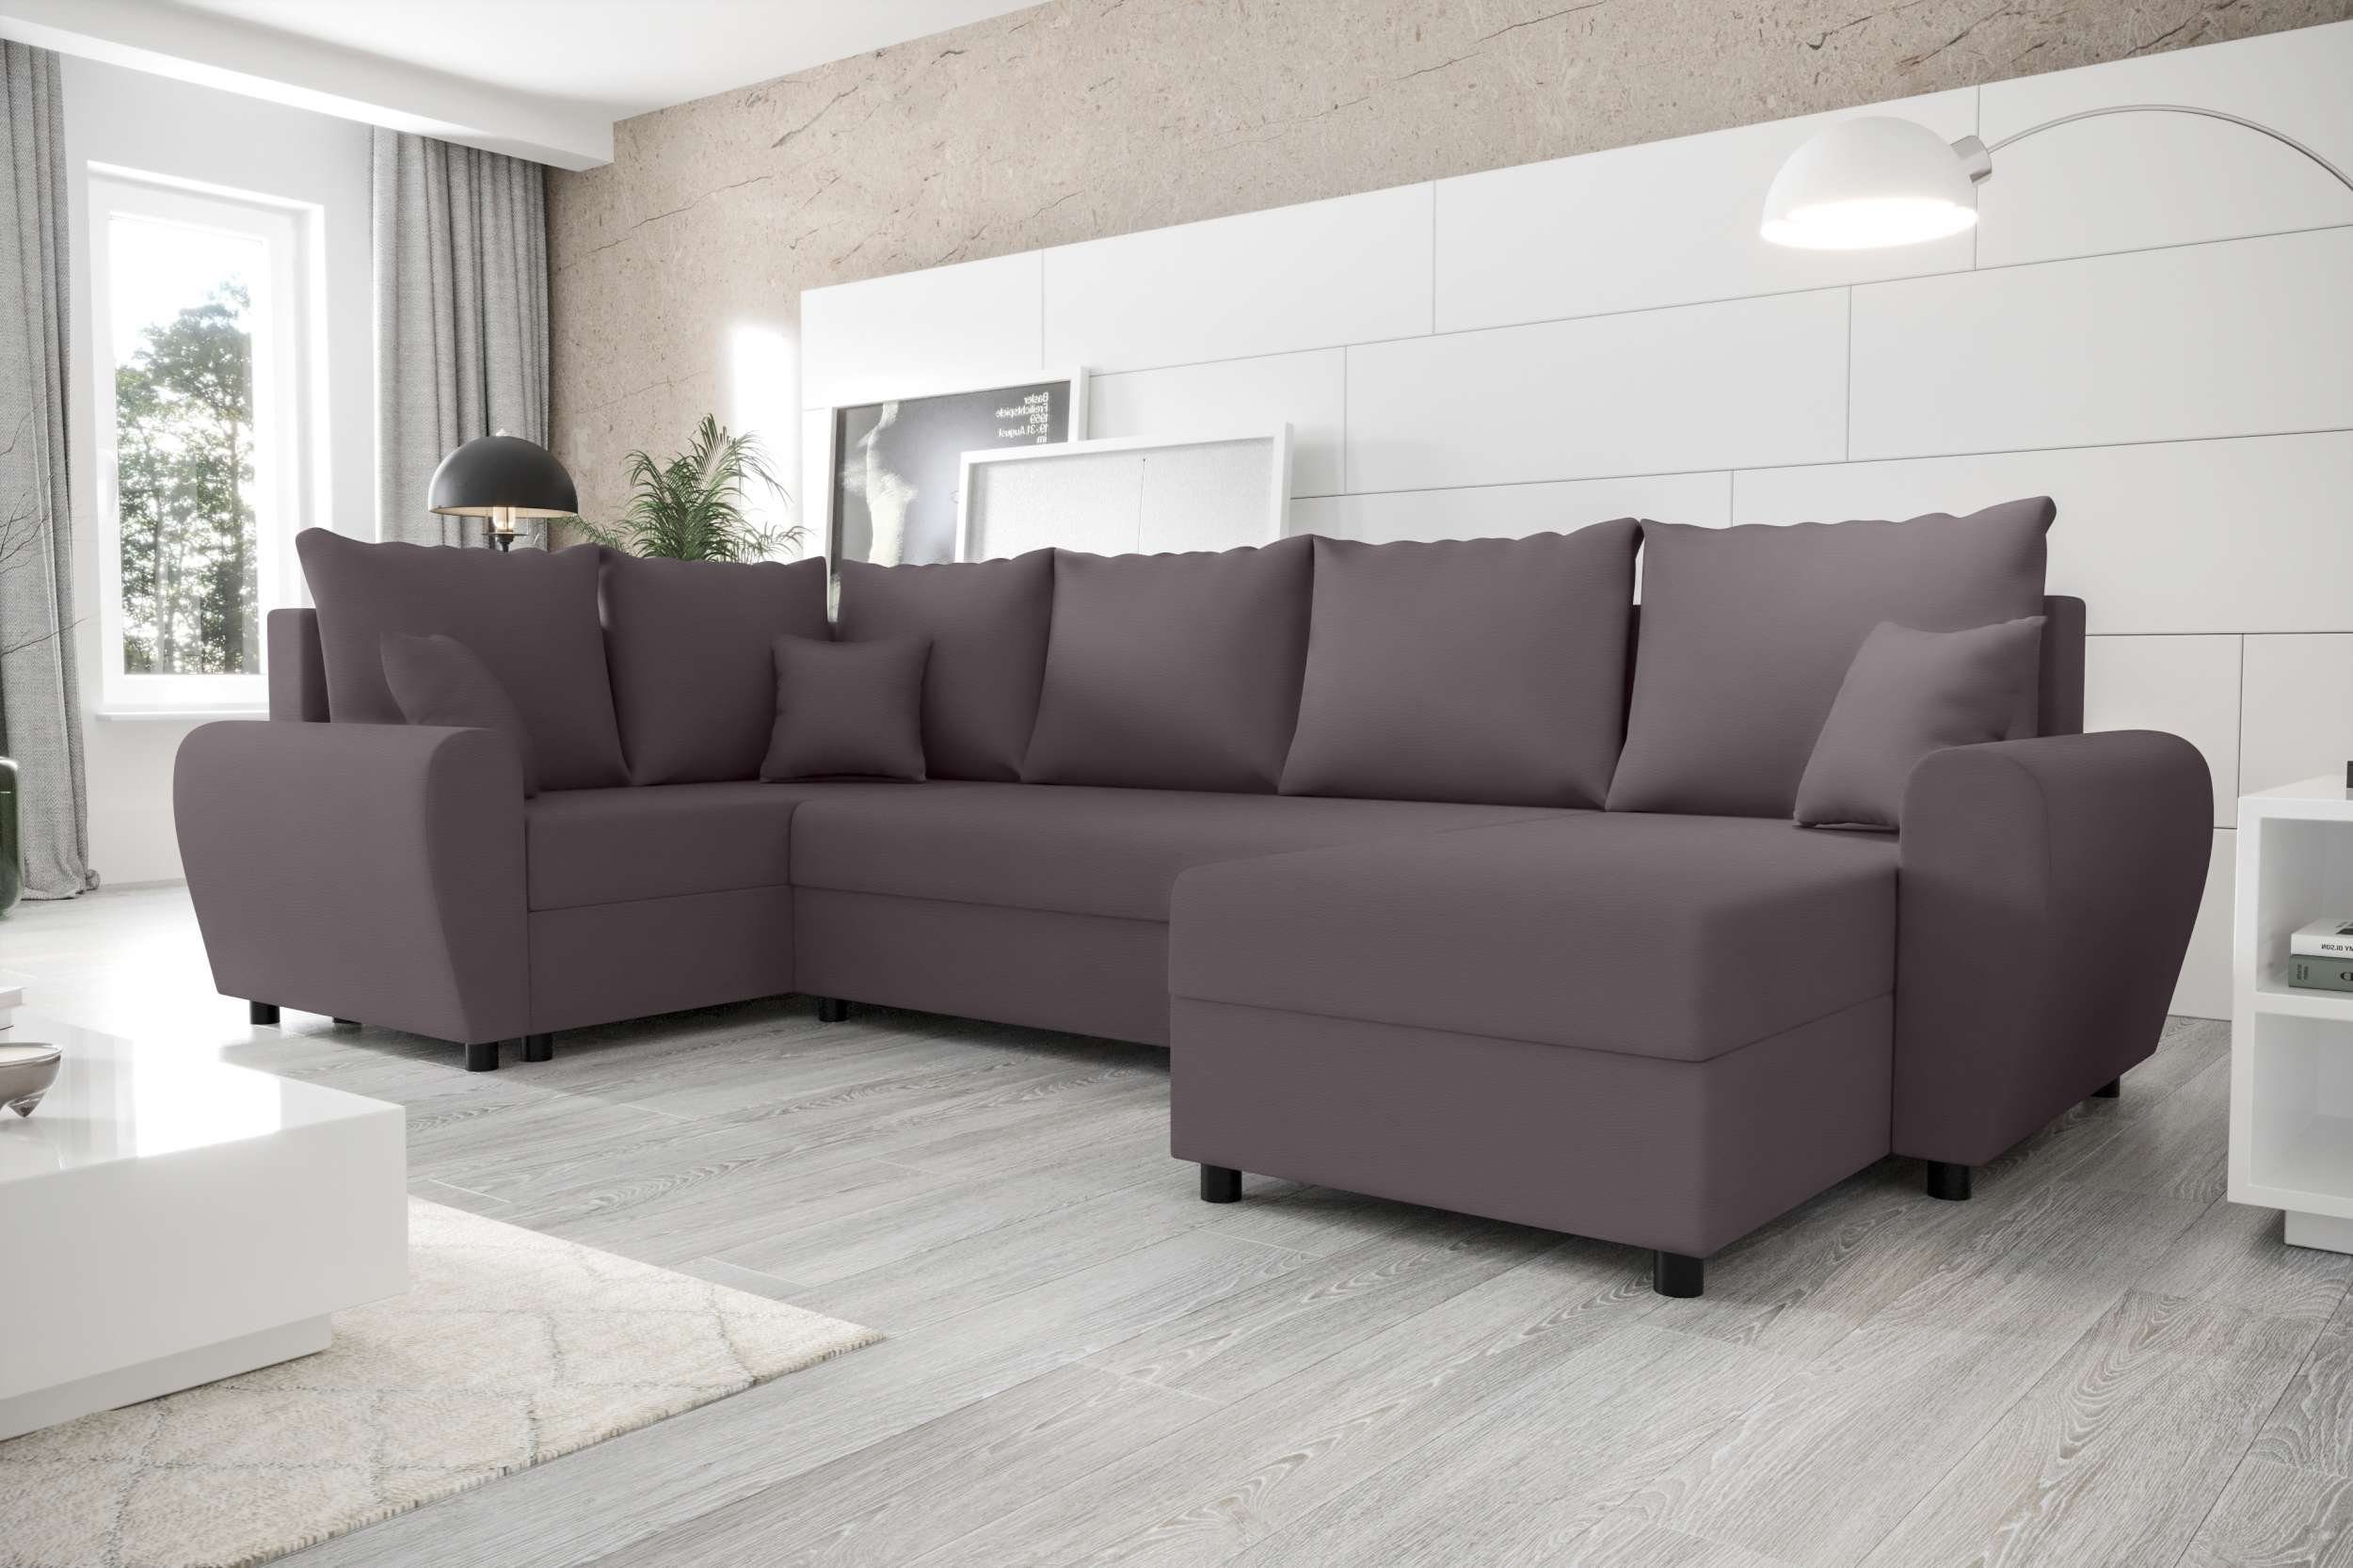 Stylefy Wohnlandschaft Design mit Sofa, Bettfunktion, Eckcouch, Haven, U-Form, Bettkasten, mit Modern Sitzkomfort